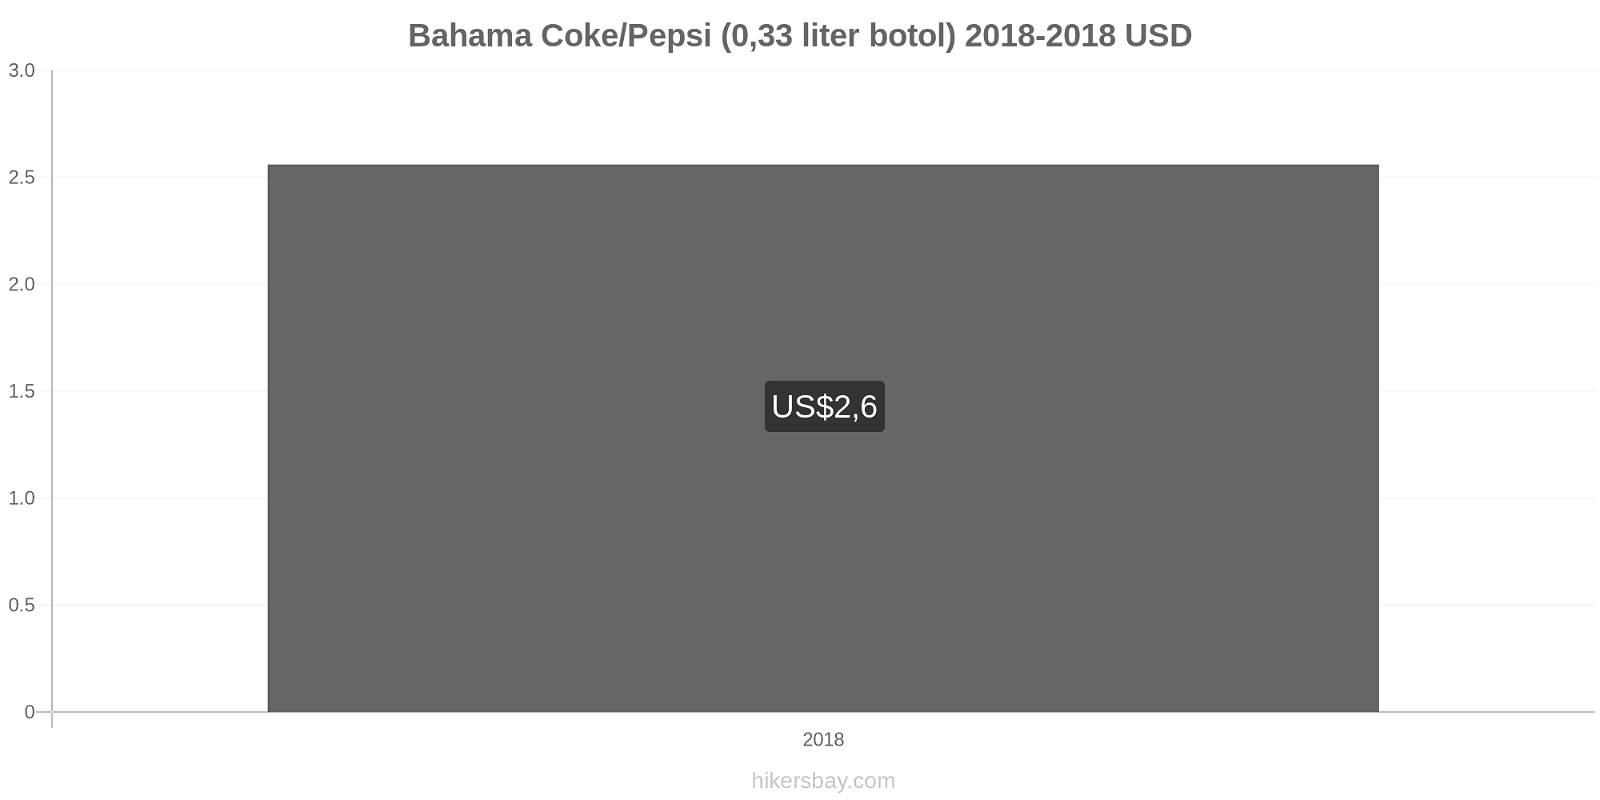 Bahama perubahan harga Coca-Cola/Pepsi (botol 0.33 liter) hikersbay.com